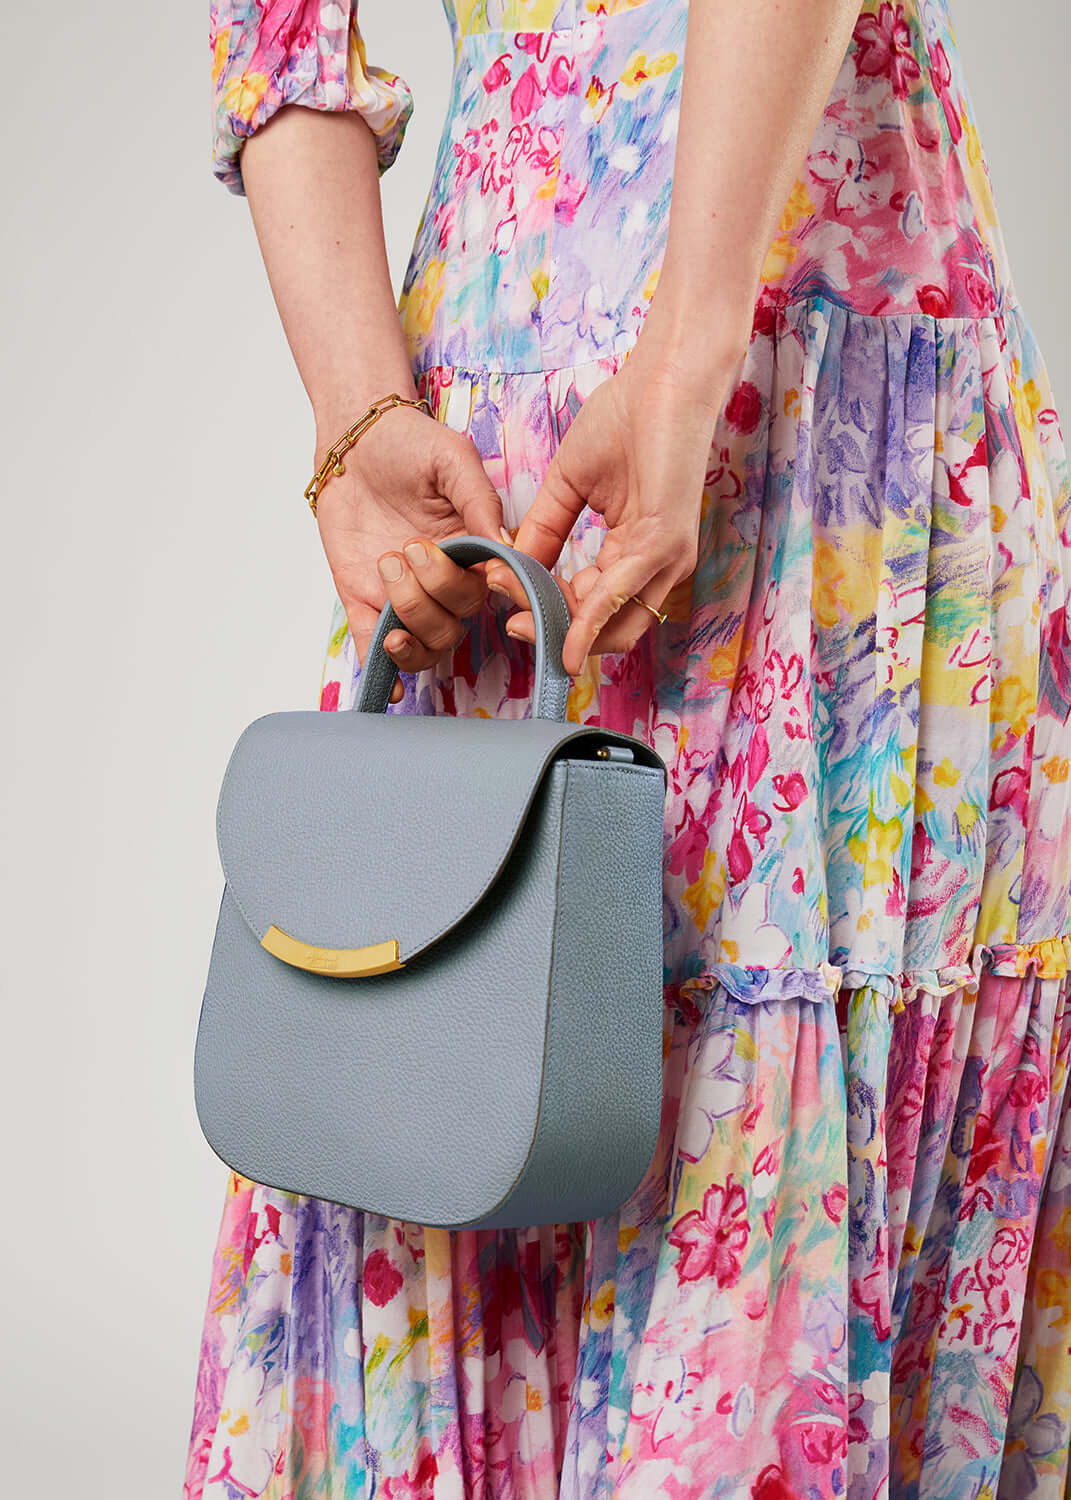 ladies leather handbag made in UK artisan craftsmanship handmade blue